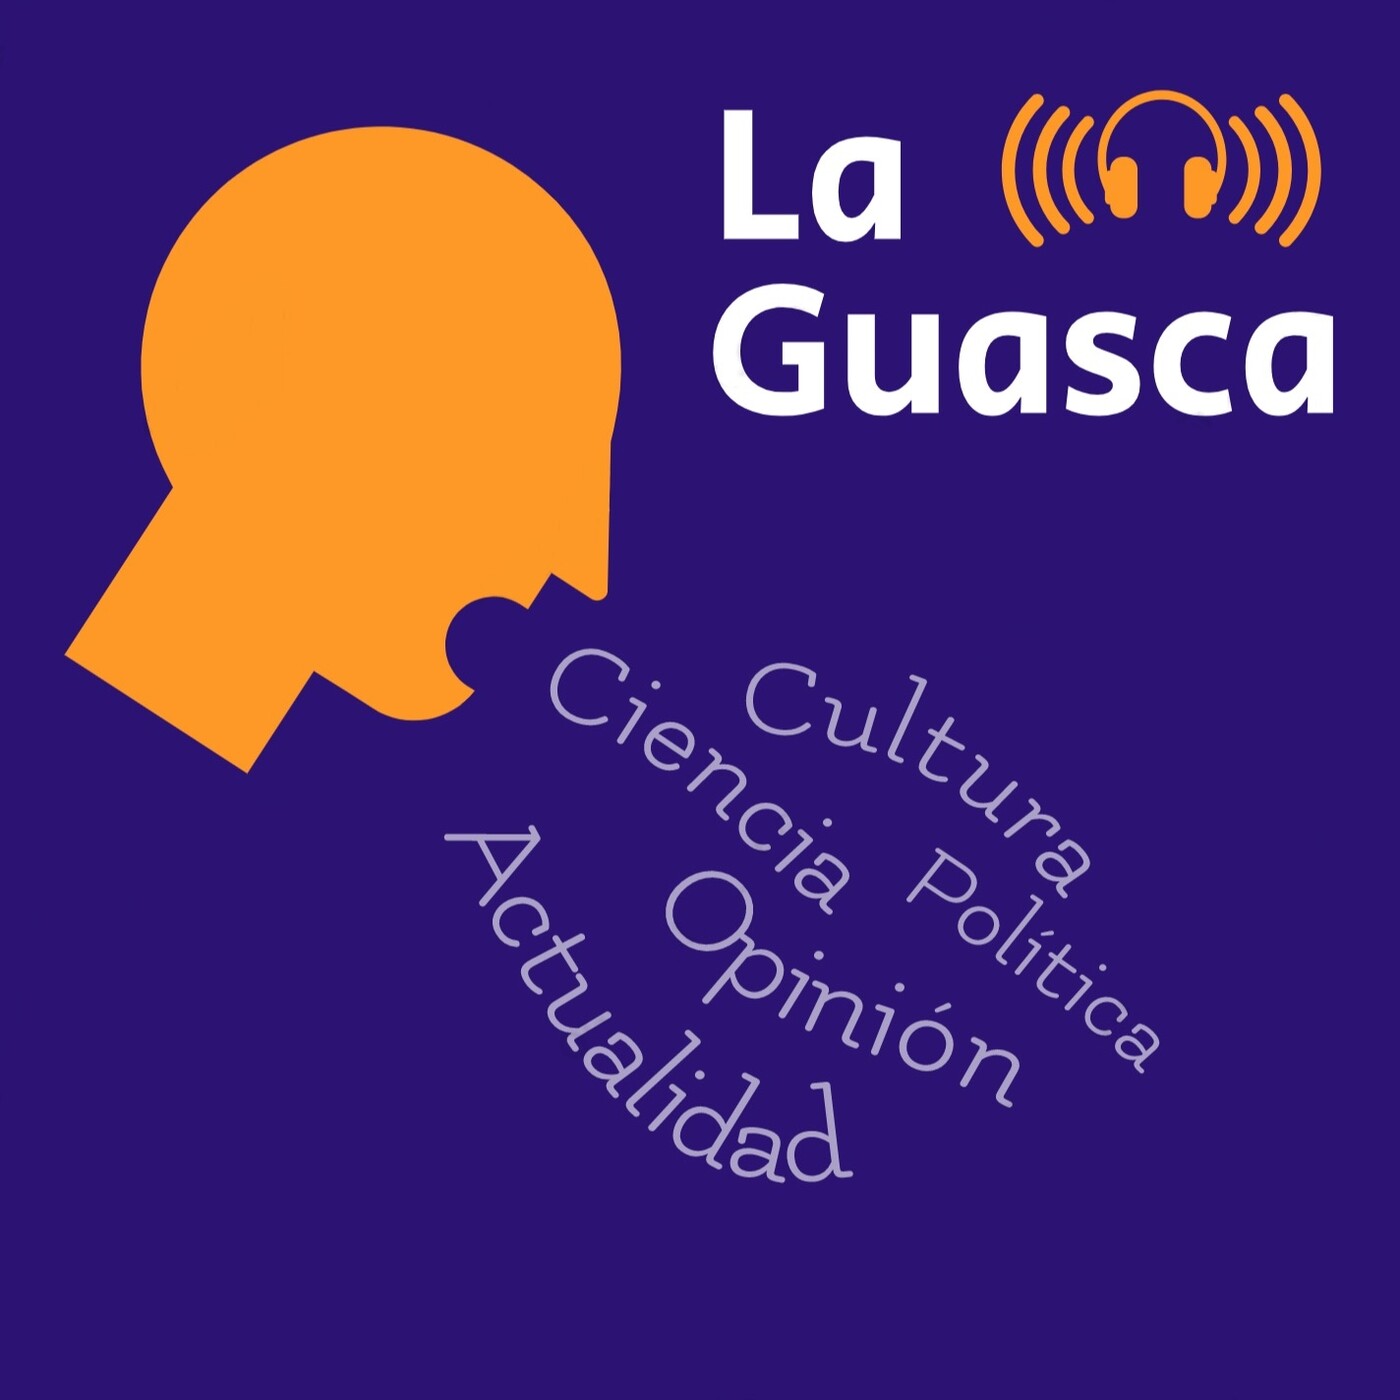 La Guasca:La Guasca